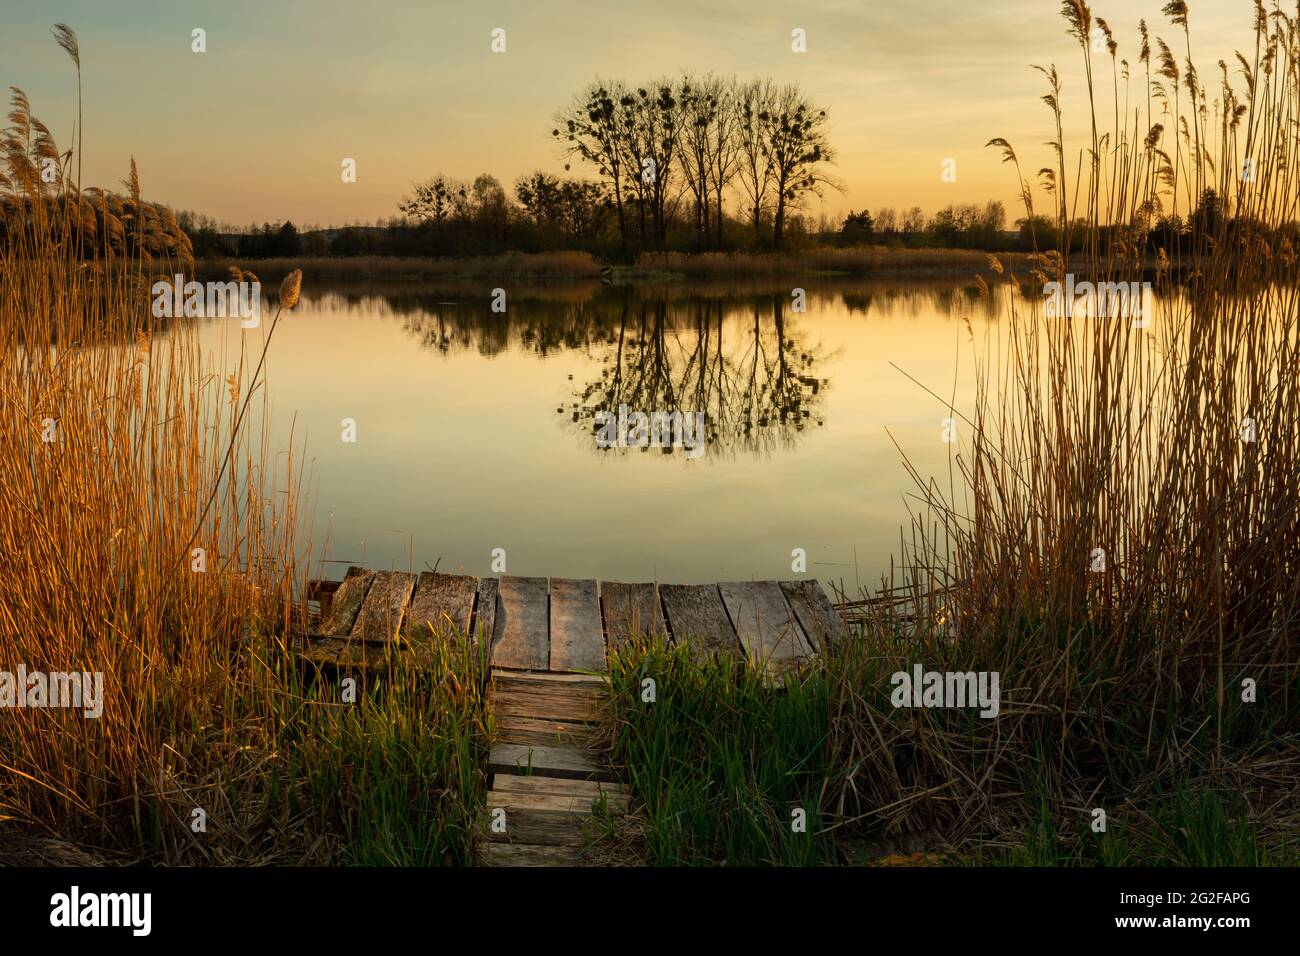 Molo in legno nel lago e riflesso di alberi in acqua, Stankow, Lubelskie, Polonia Foto Stock